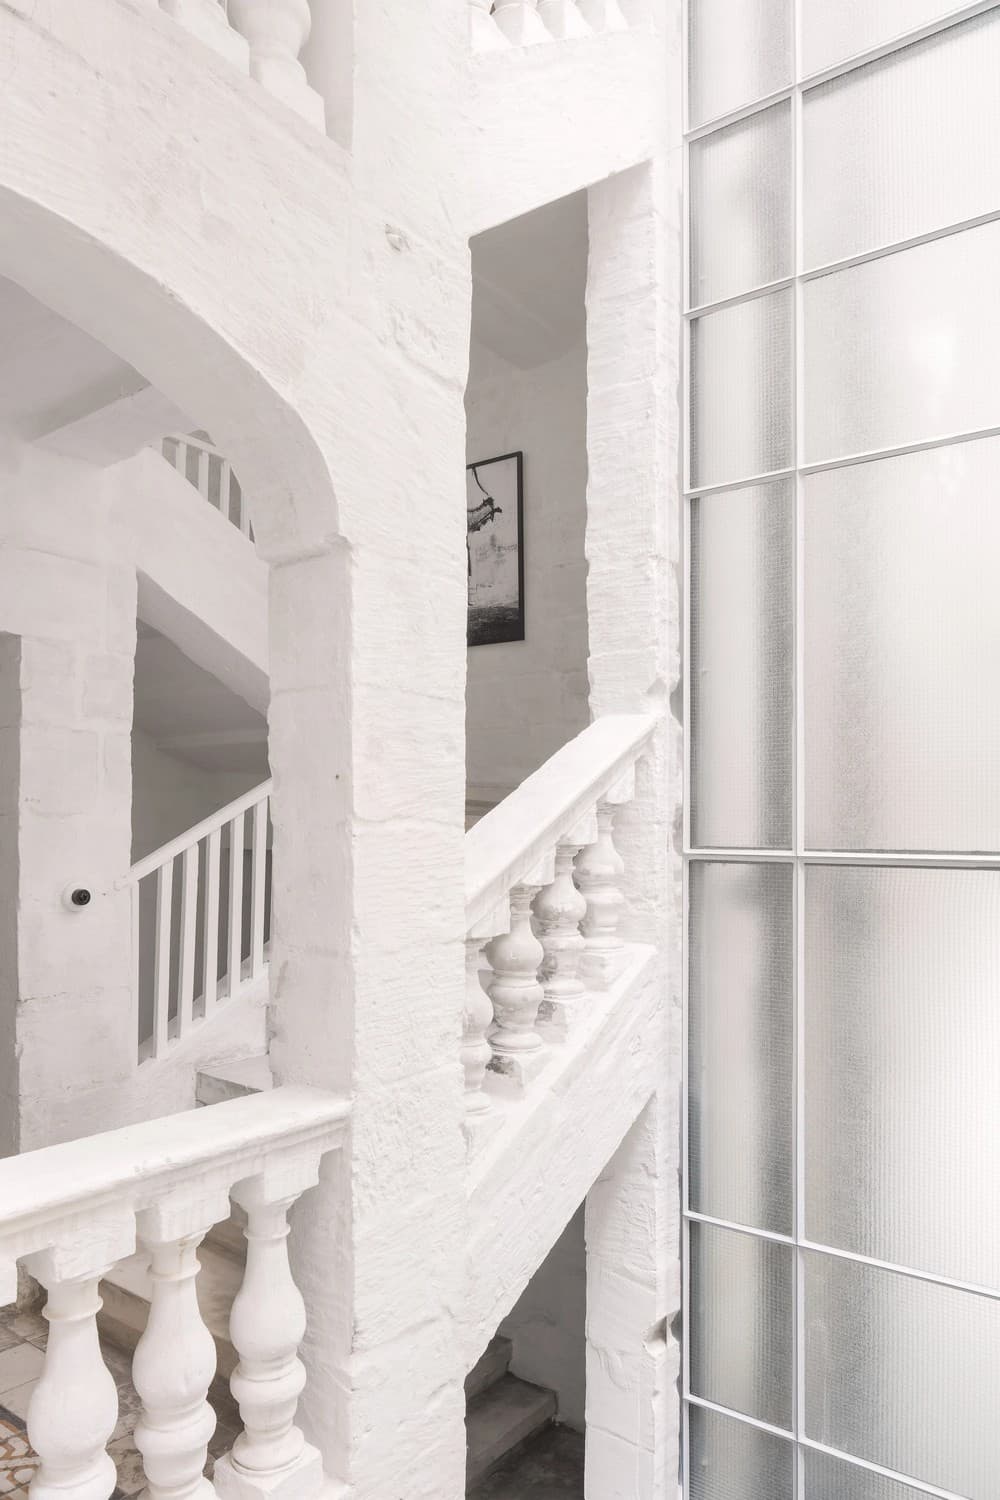 Casa Bottega, Malta / Chris Briffa Architects